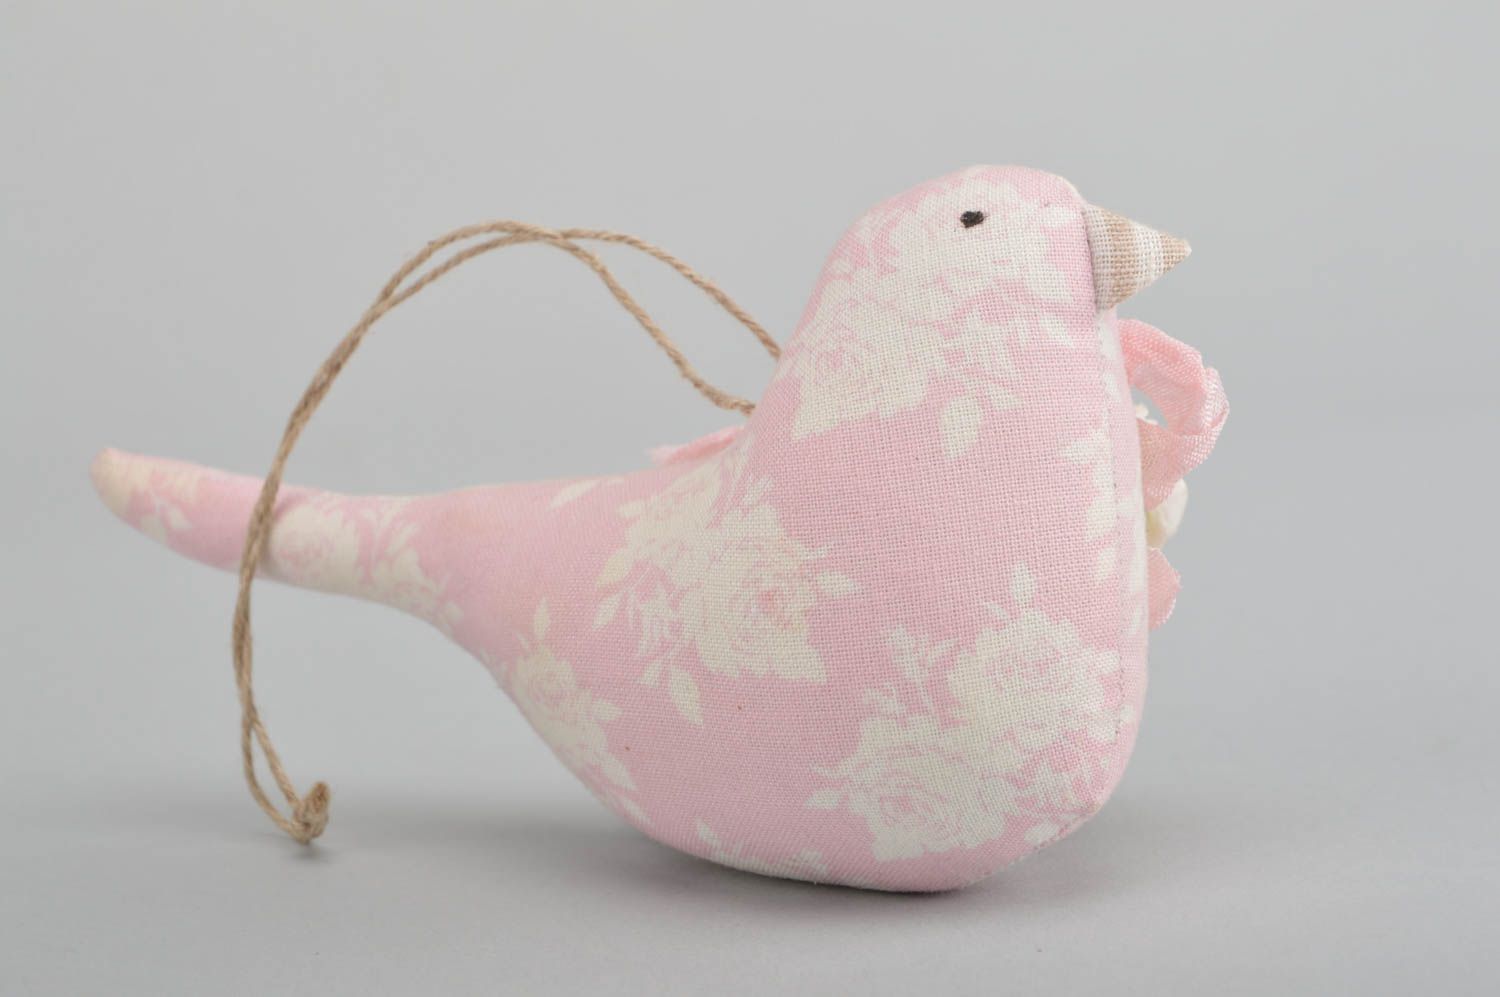 Интерьерная подвеска птичка розовая из хлопка на стену ручной работы для декора фото 4